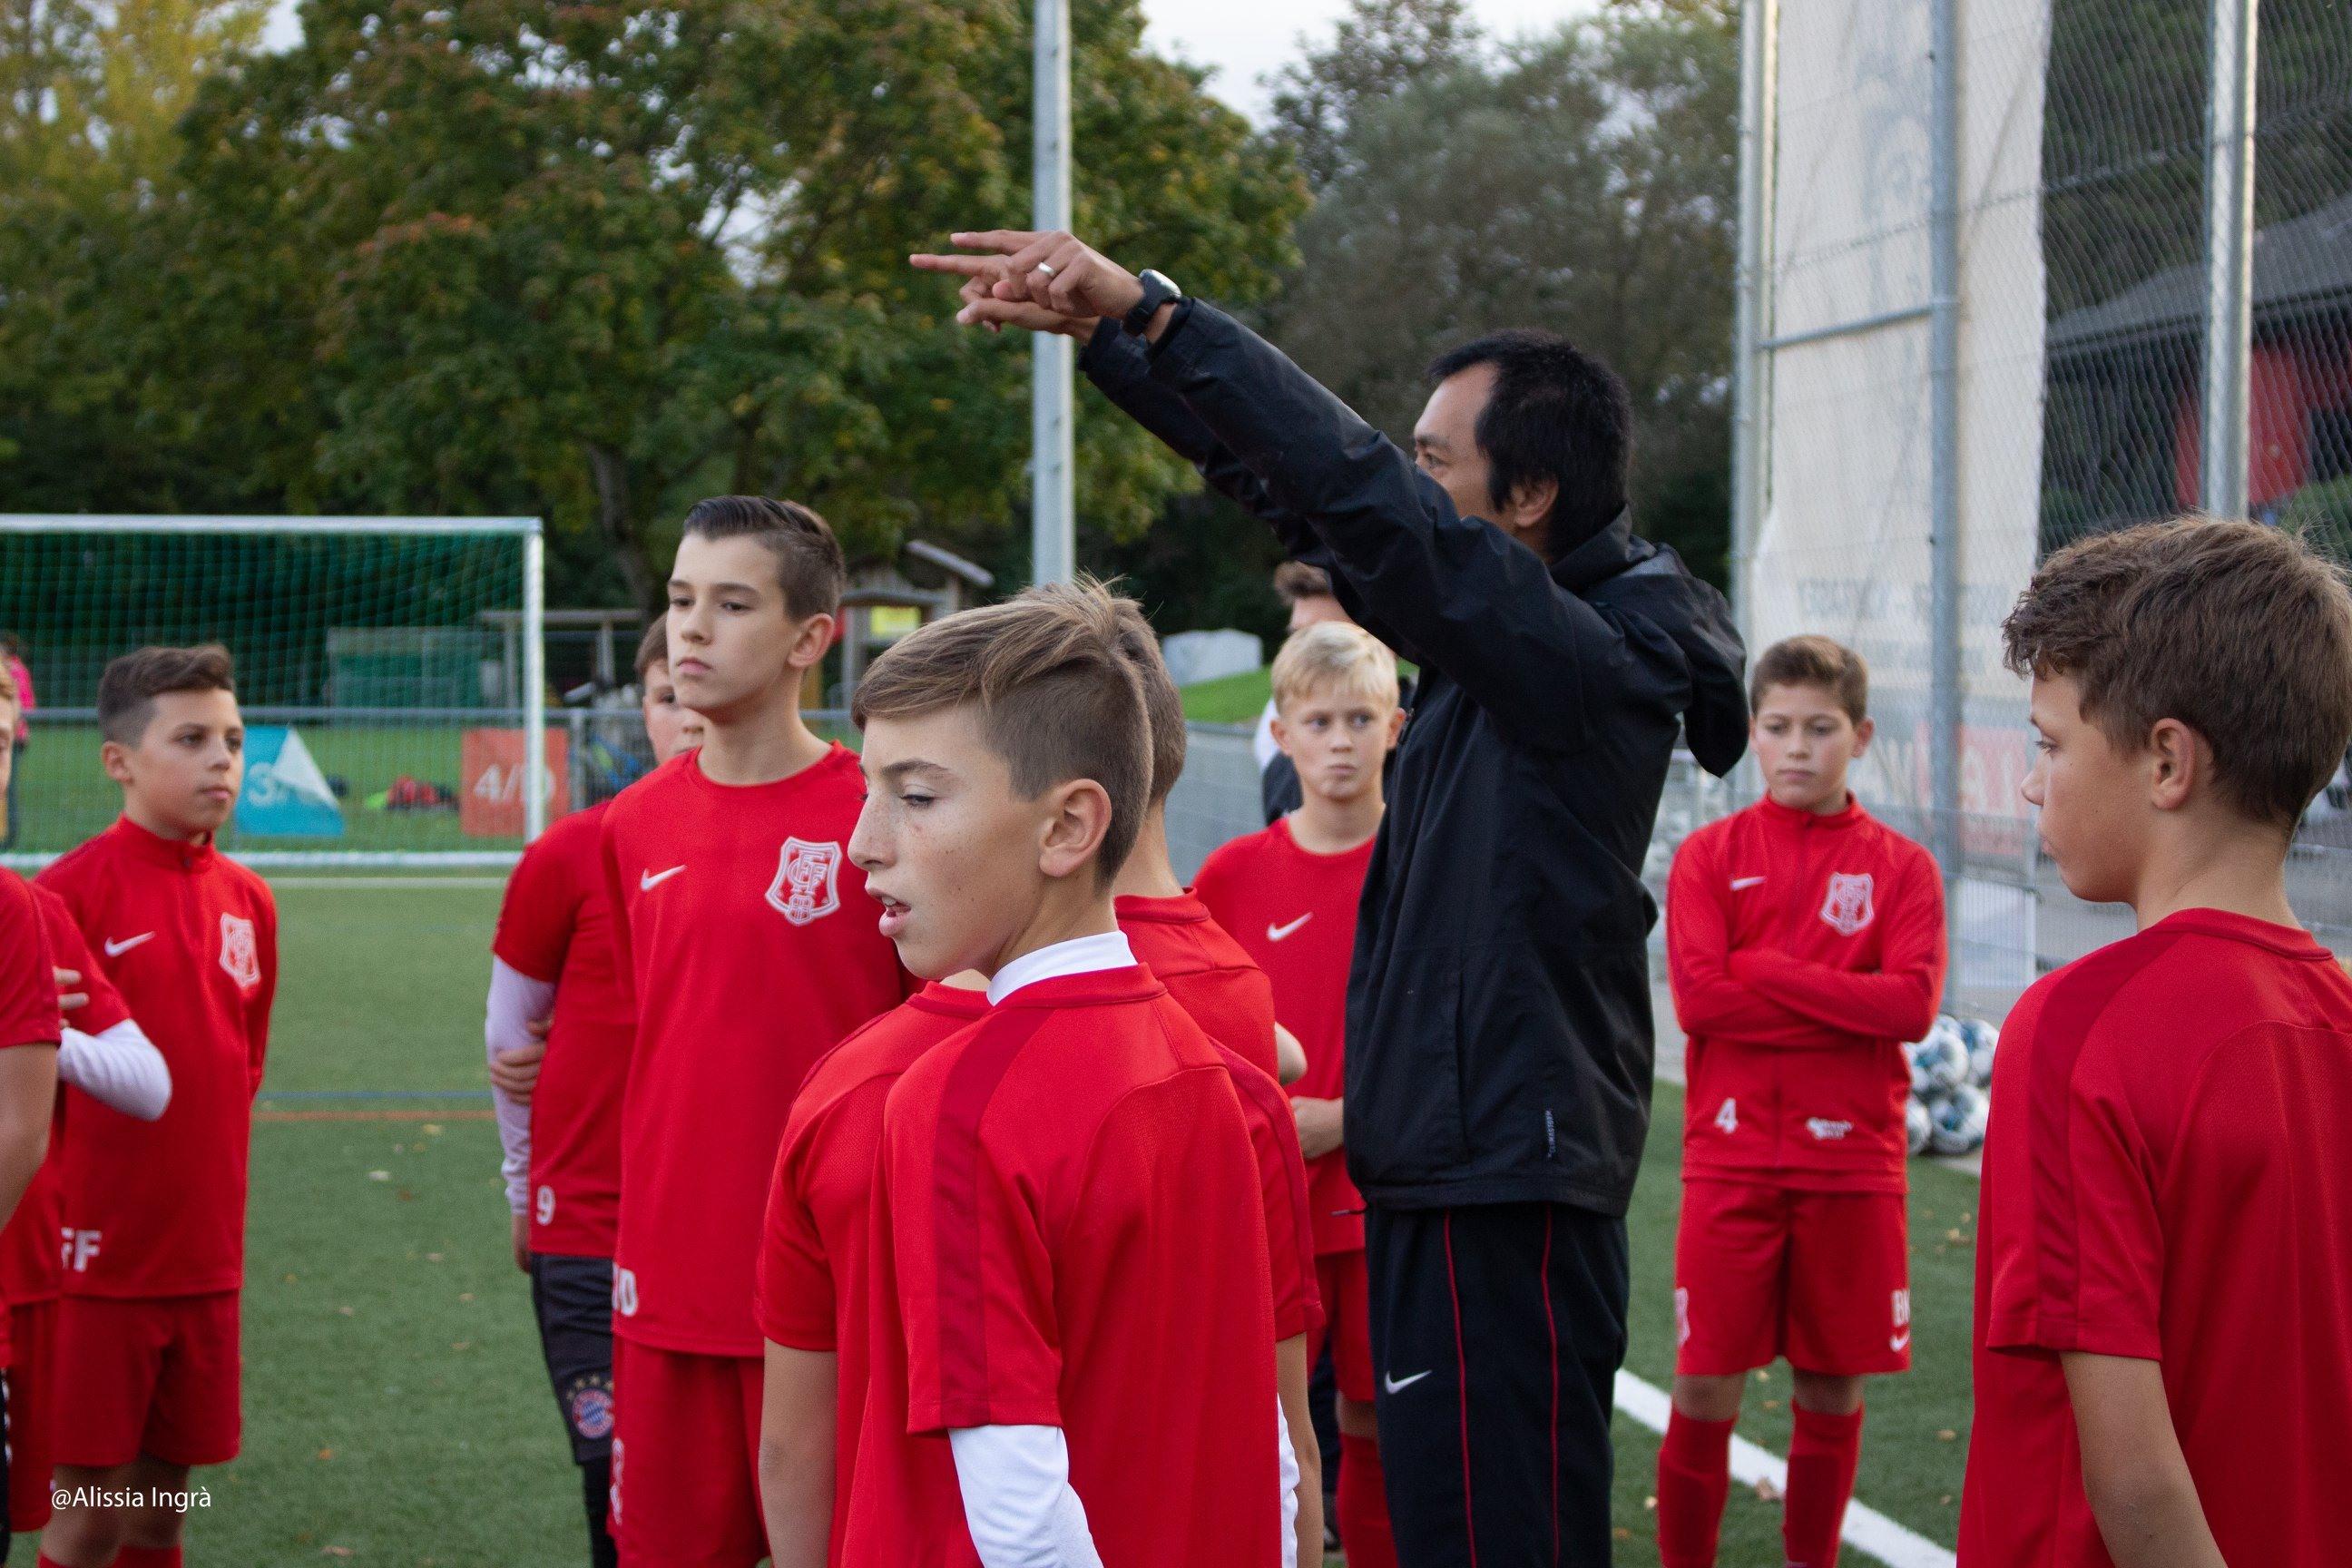 休むこともトレーニング 休養 に大切な3つの要素とは サッカー大国ドイツの育成環境の実情 Coach United コーチ ユナイテッド